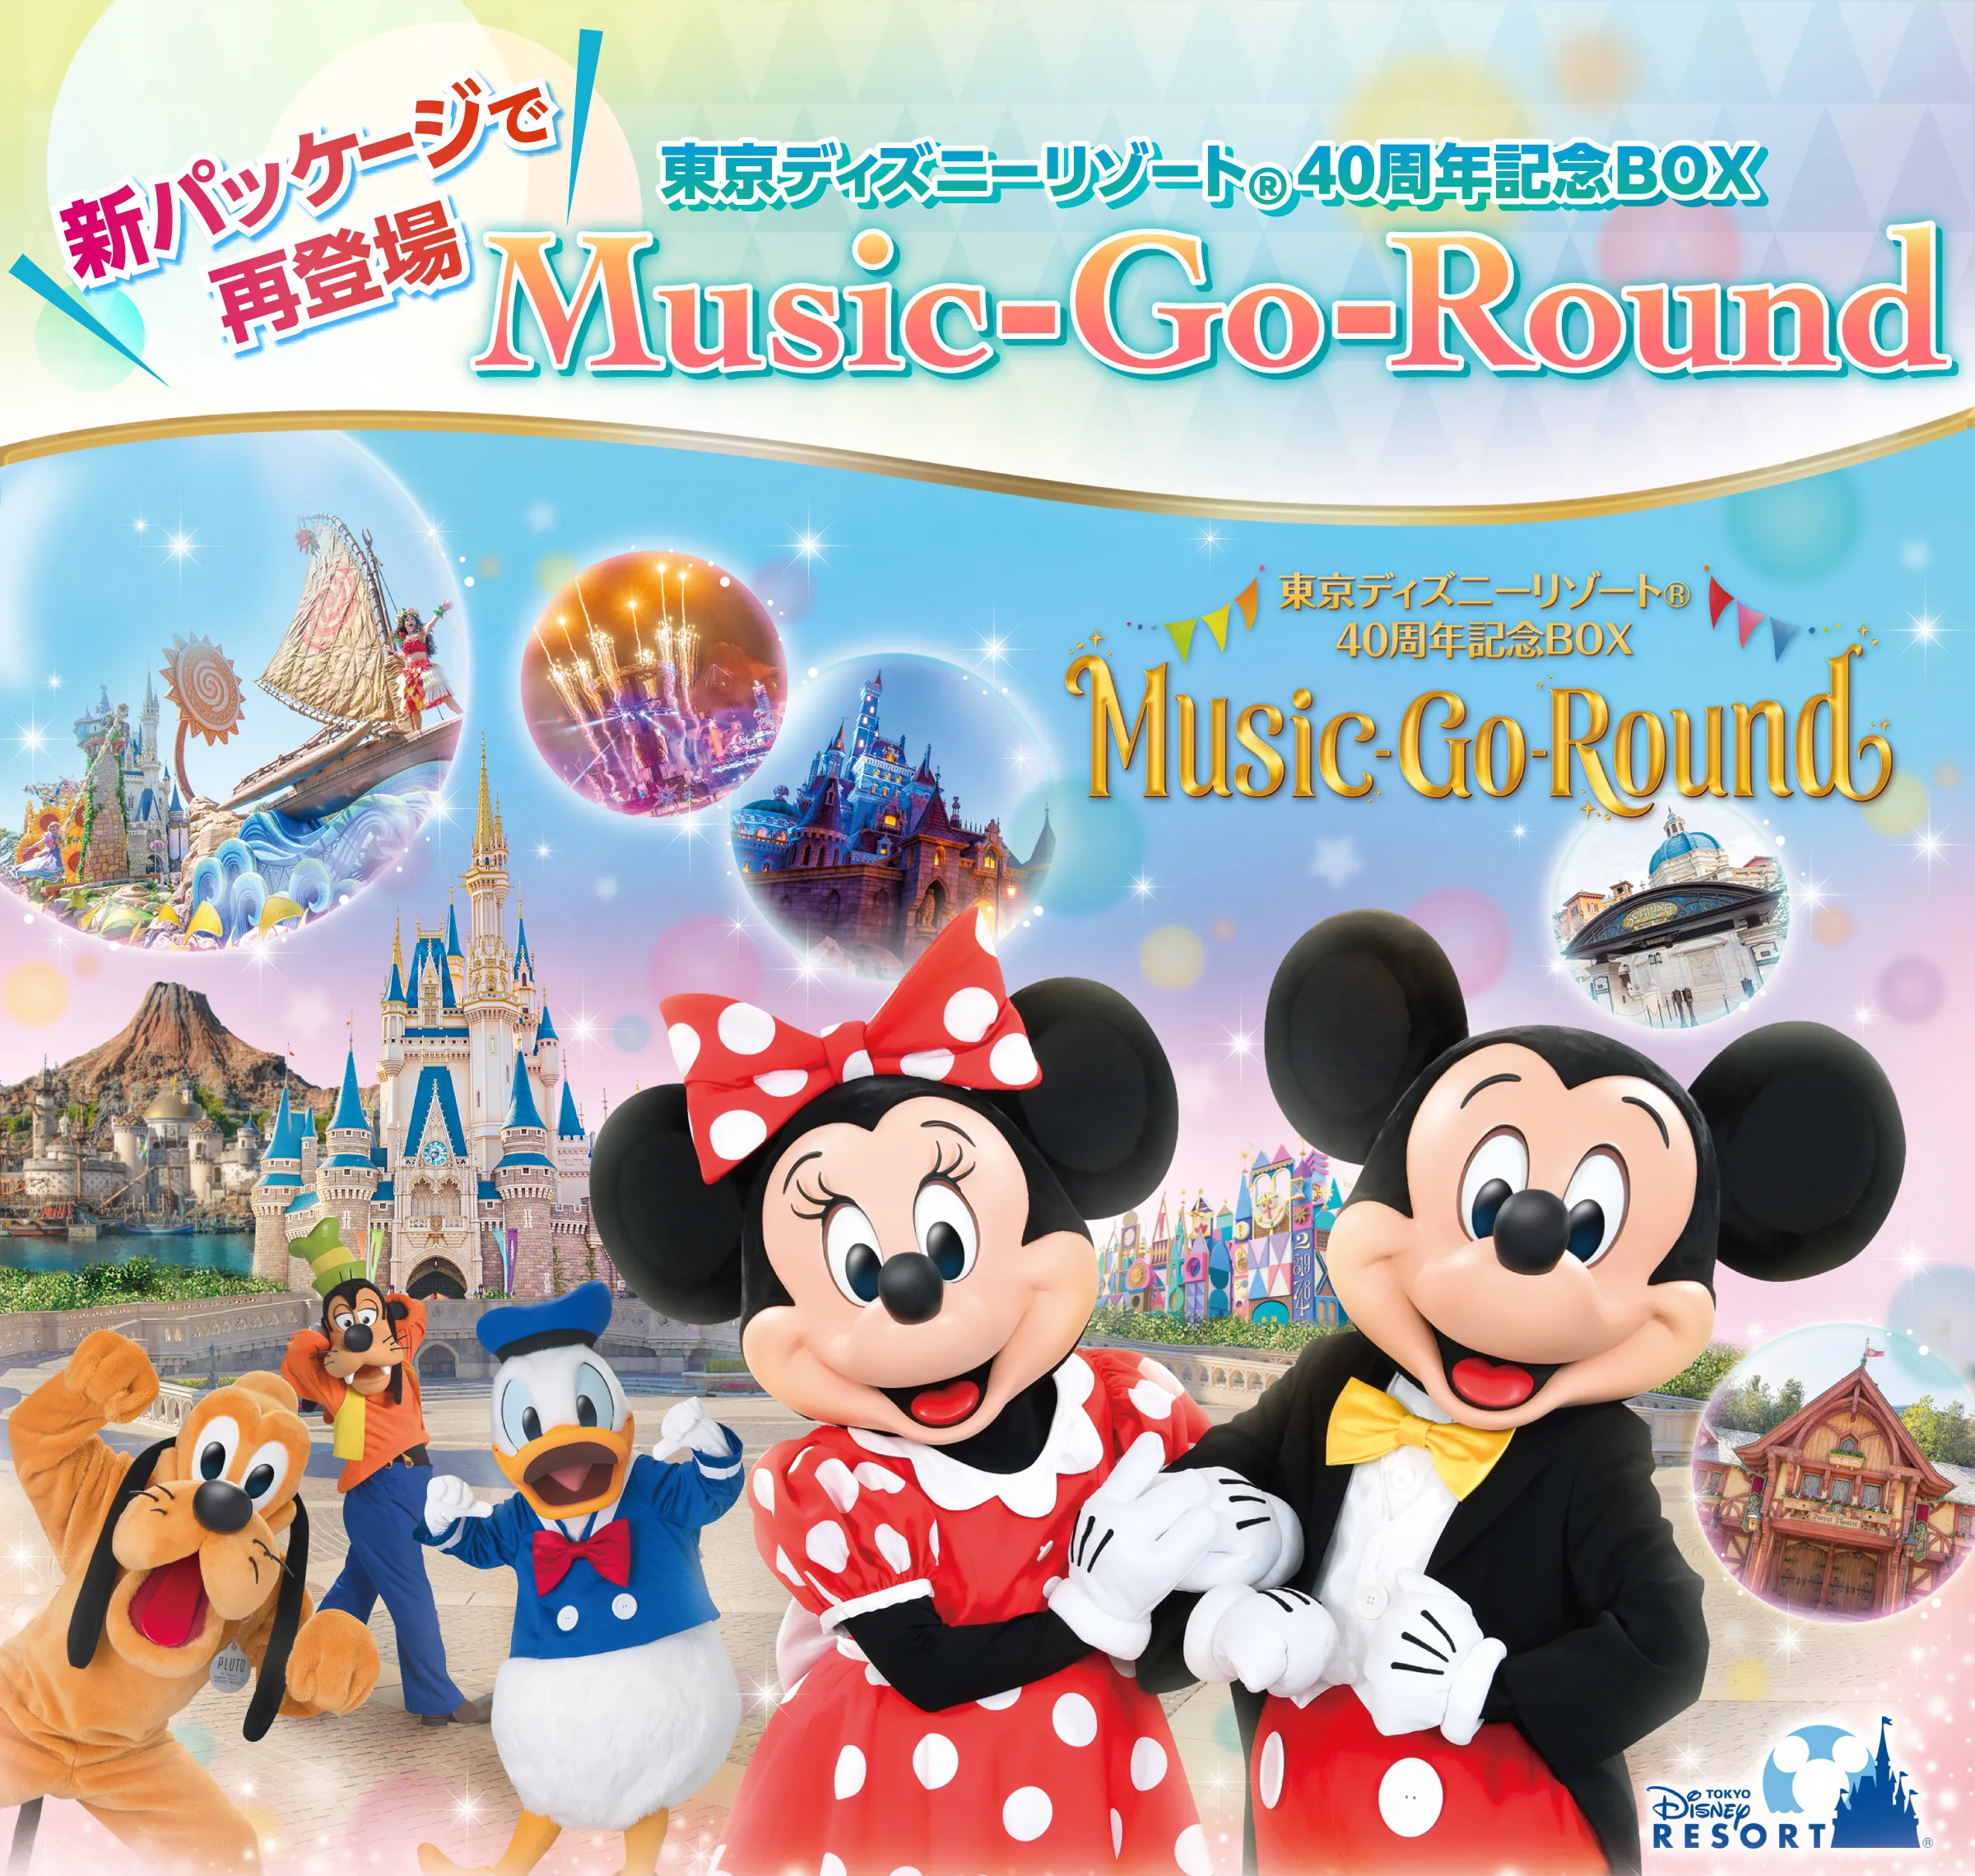 東京ディズニーリゾート(R)40周年記念BOX『Music-Go-Round 